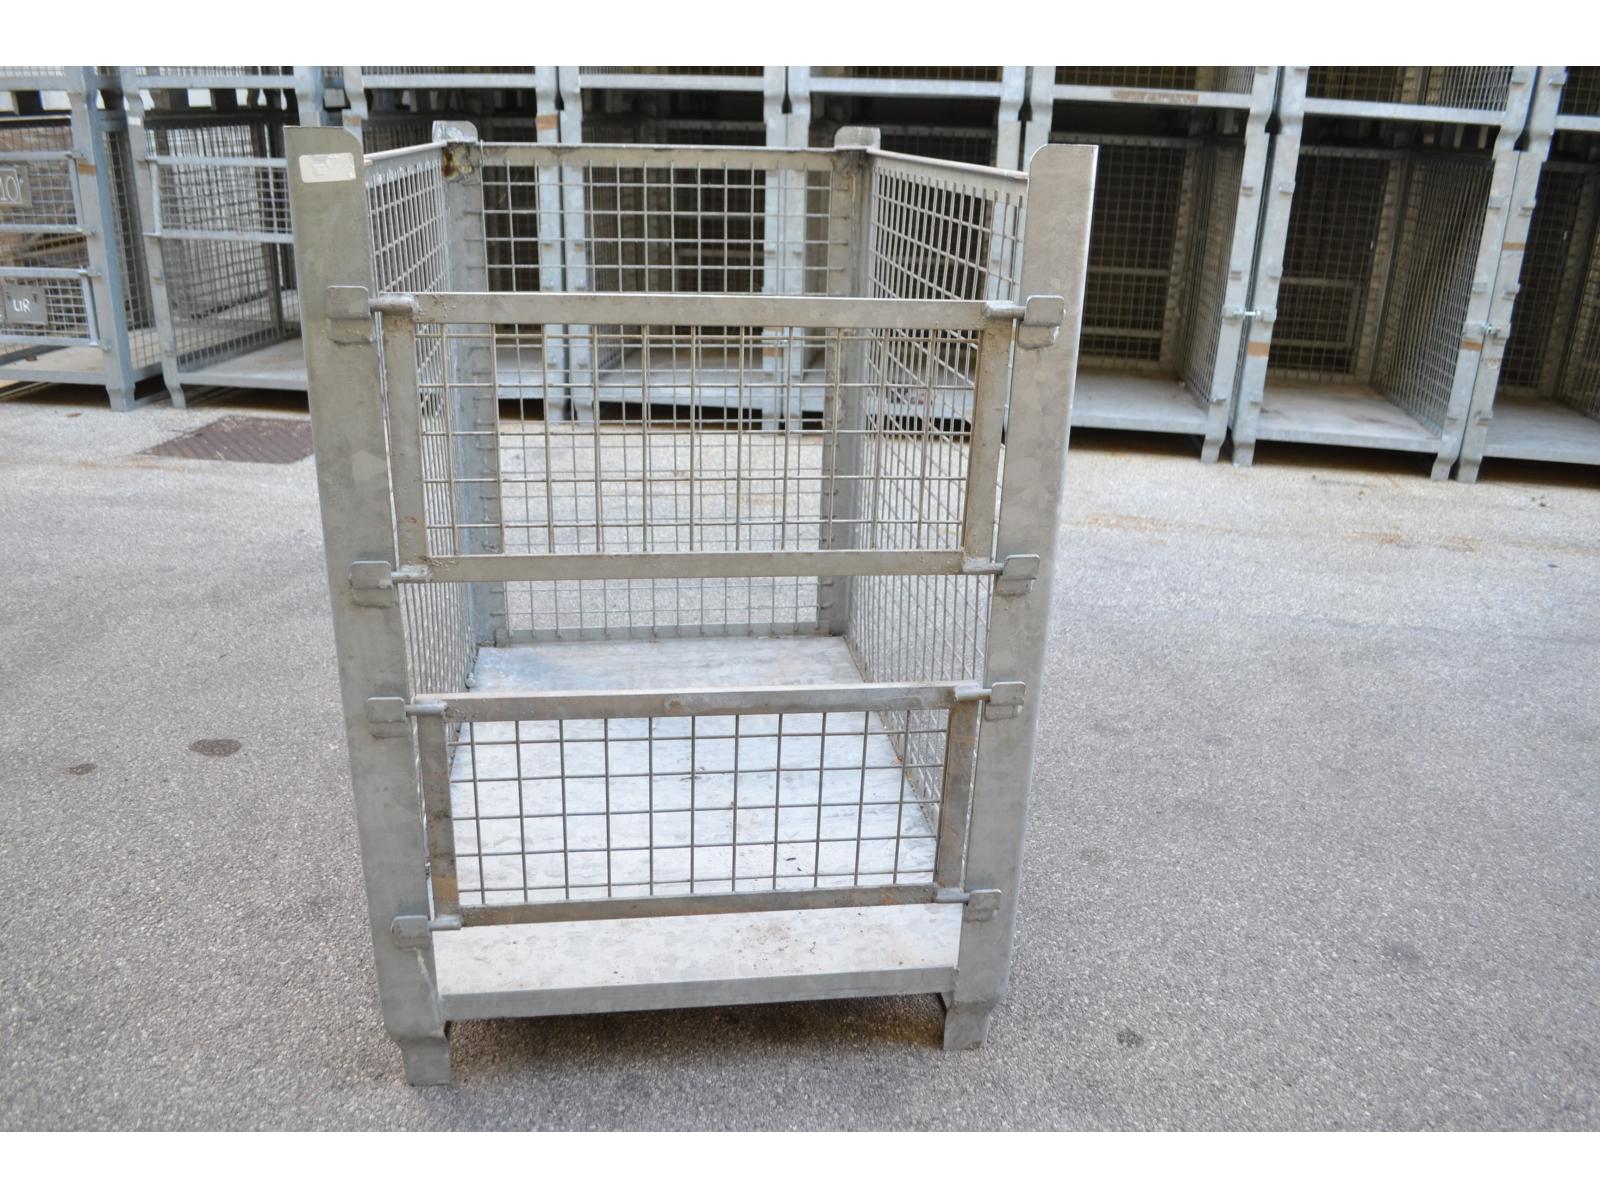 gabbie metalliche zincate da 800 x 1200 base x 1150 h (altezza utile interna 1000 mm ) Le gabbie dispongono tutte ( o quasi) di